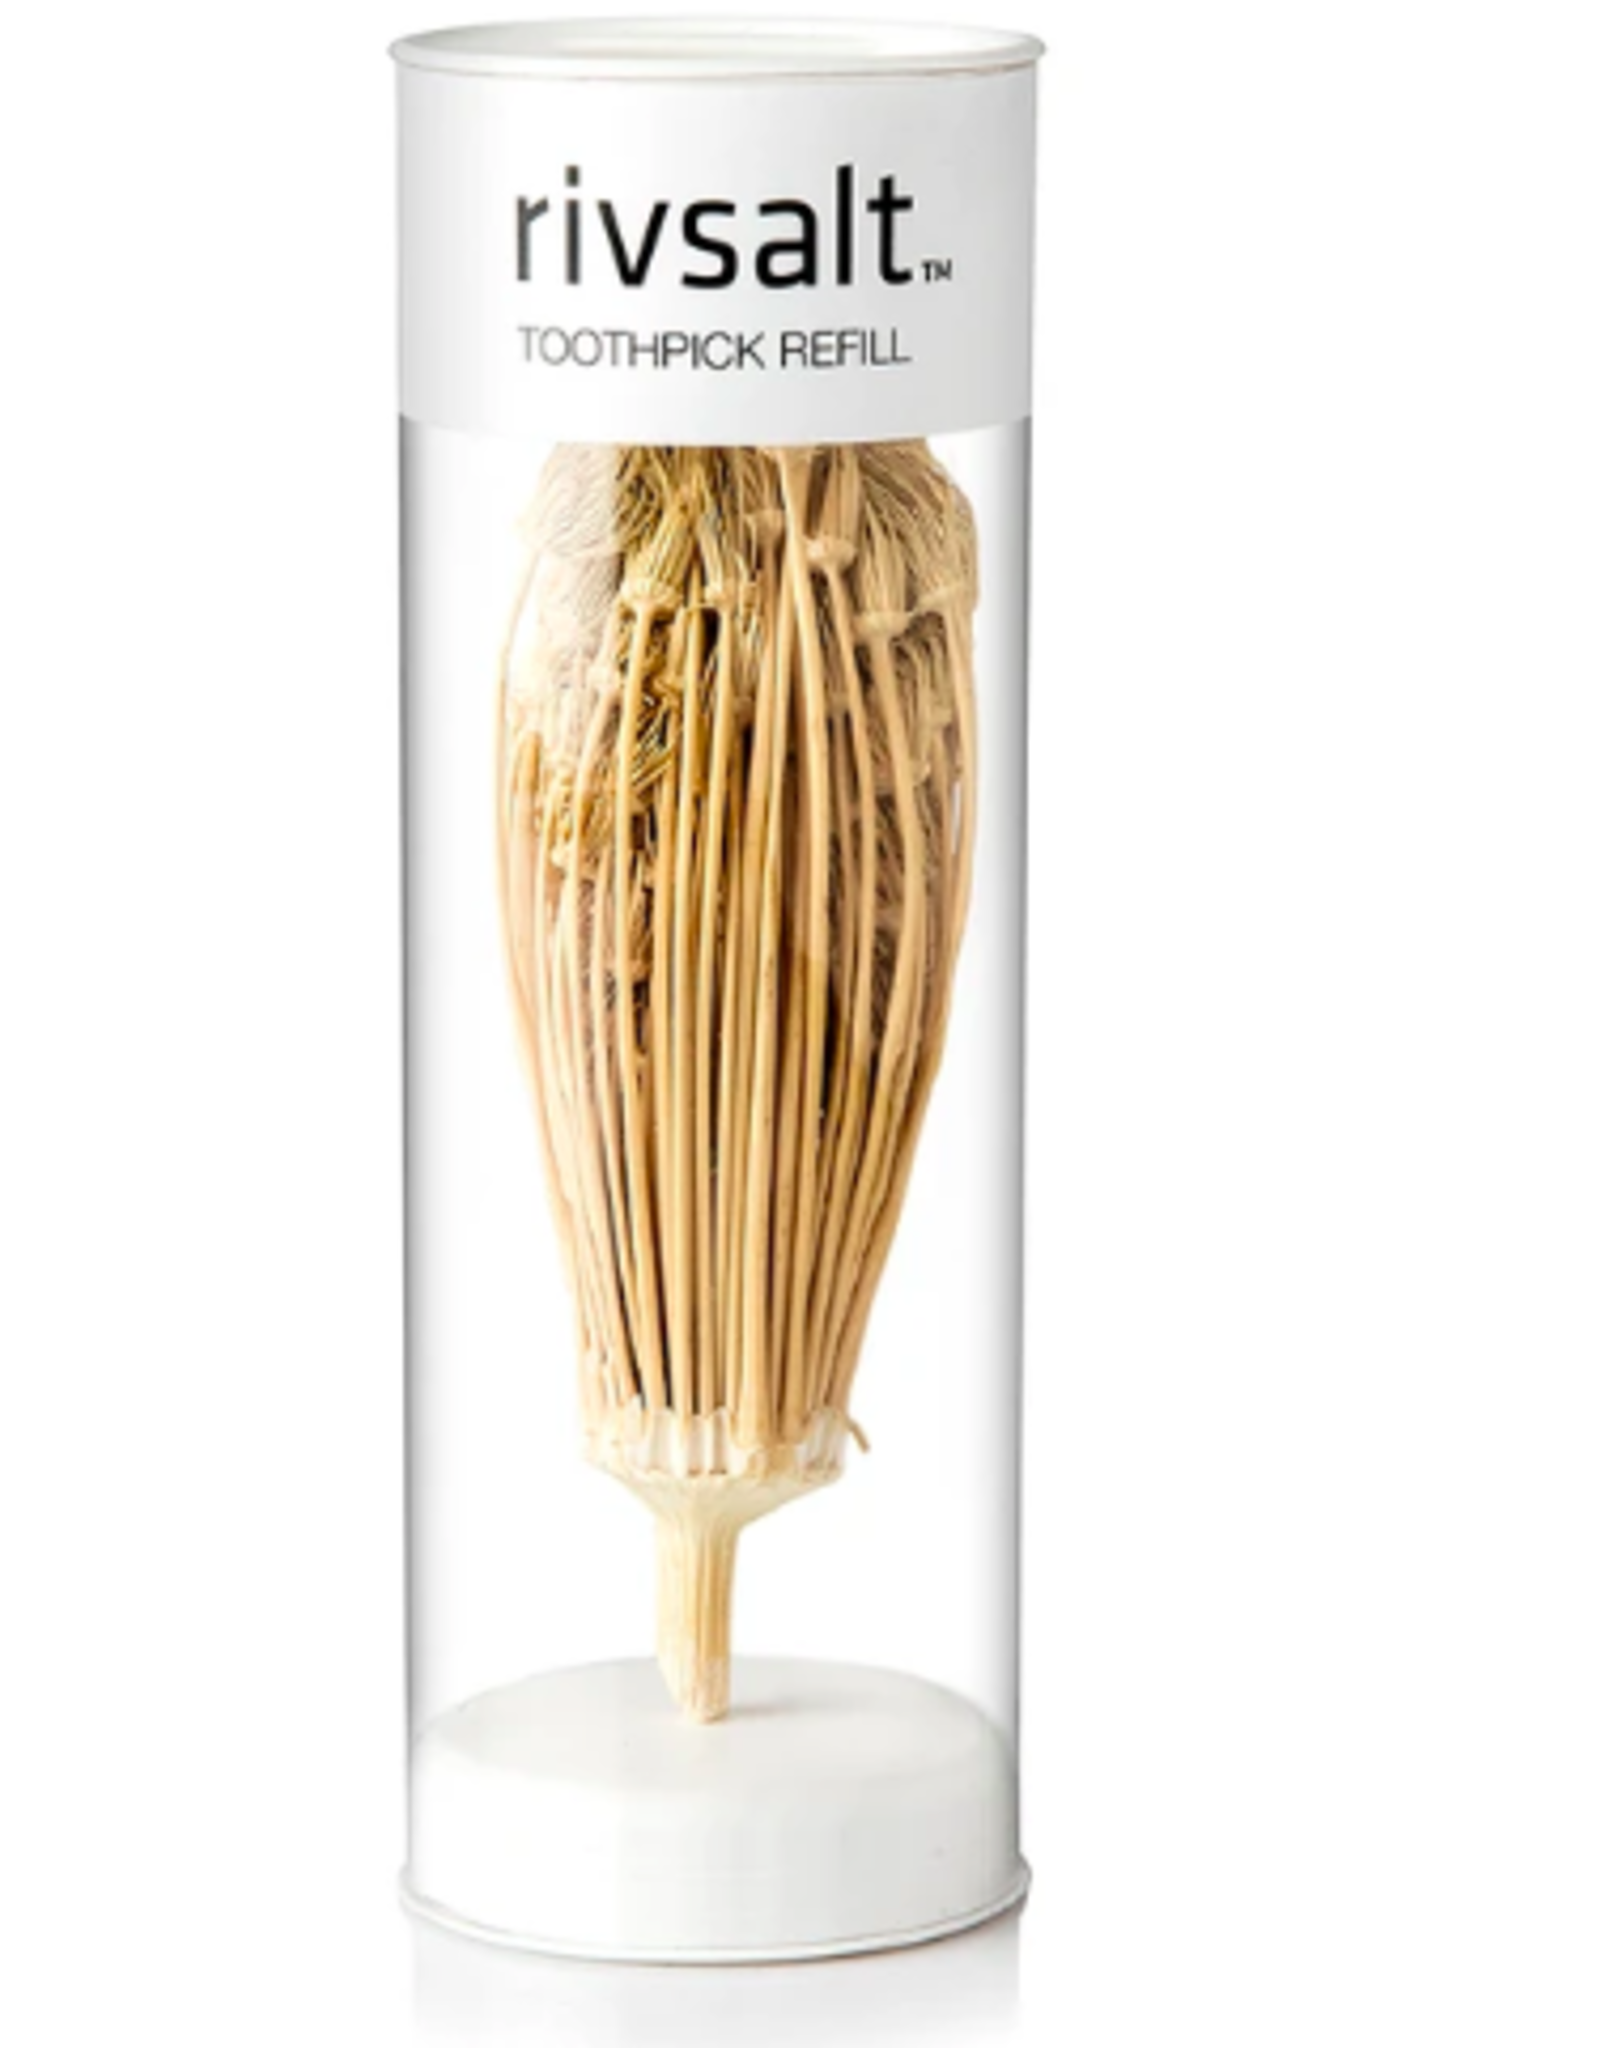 Rivsalt - Toothpick refill